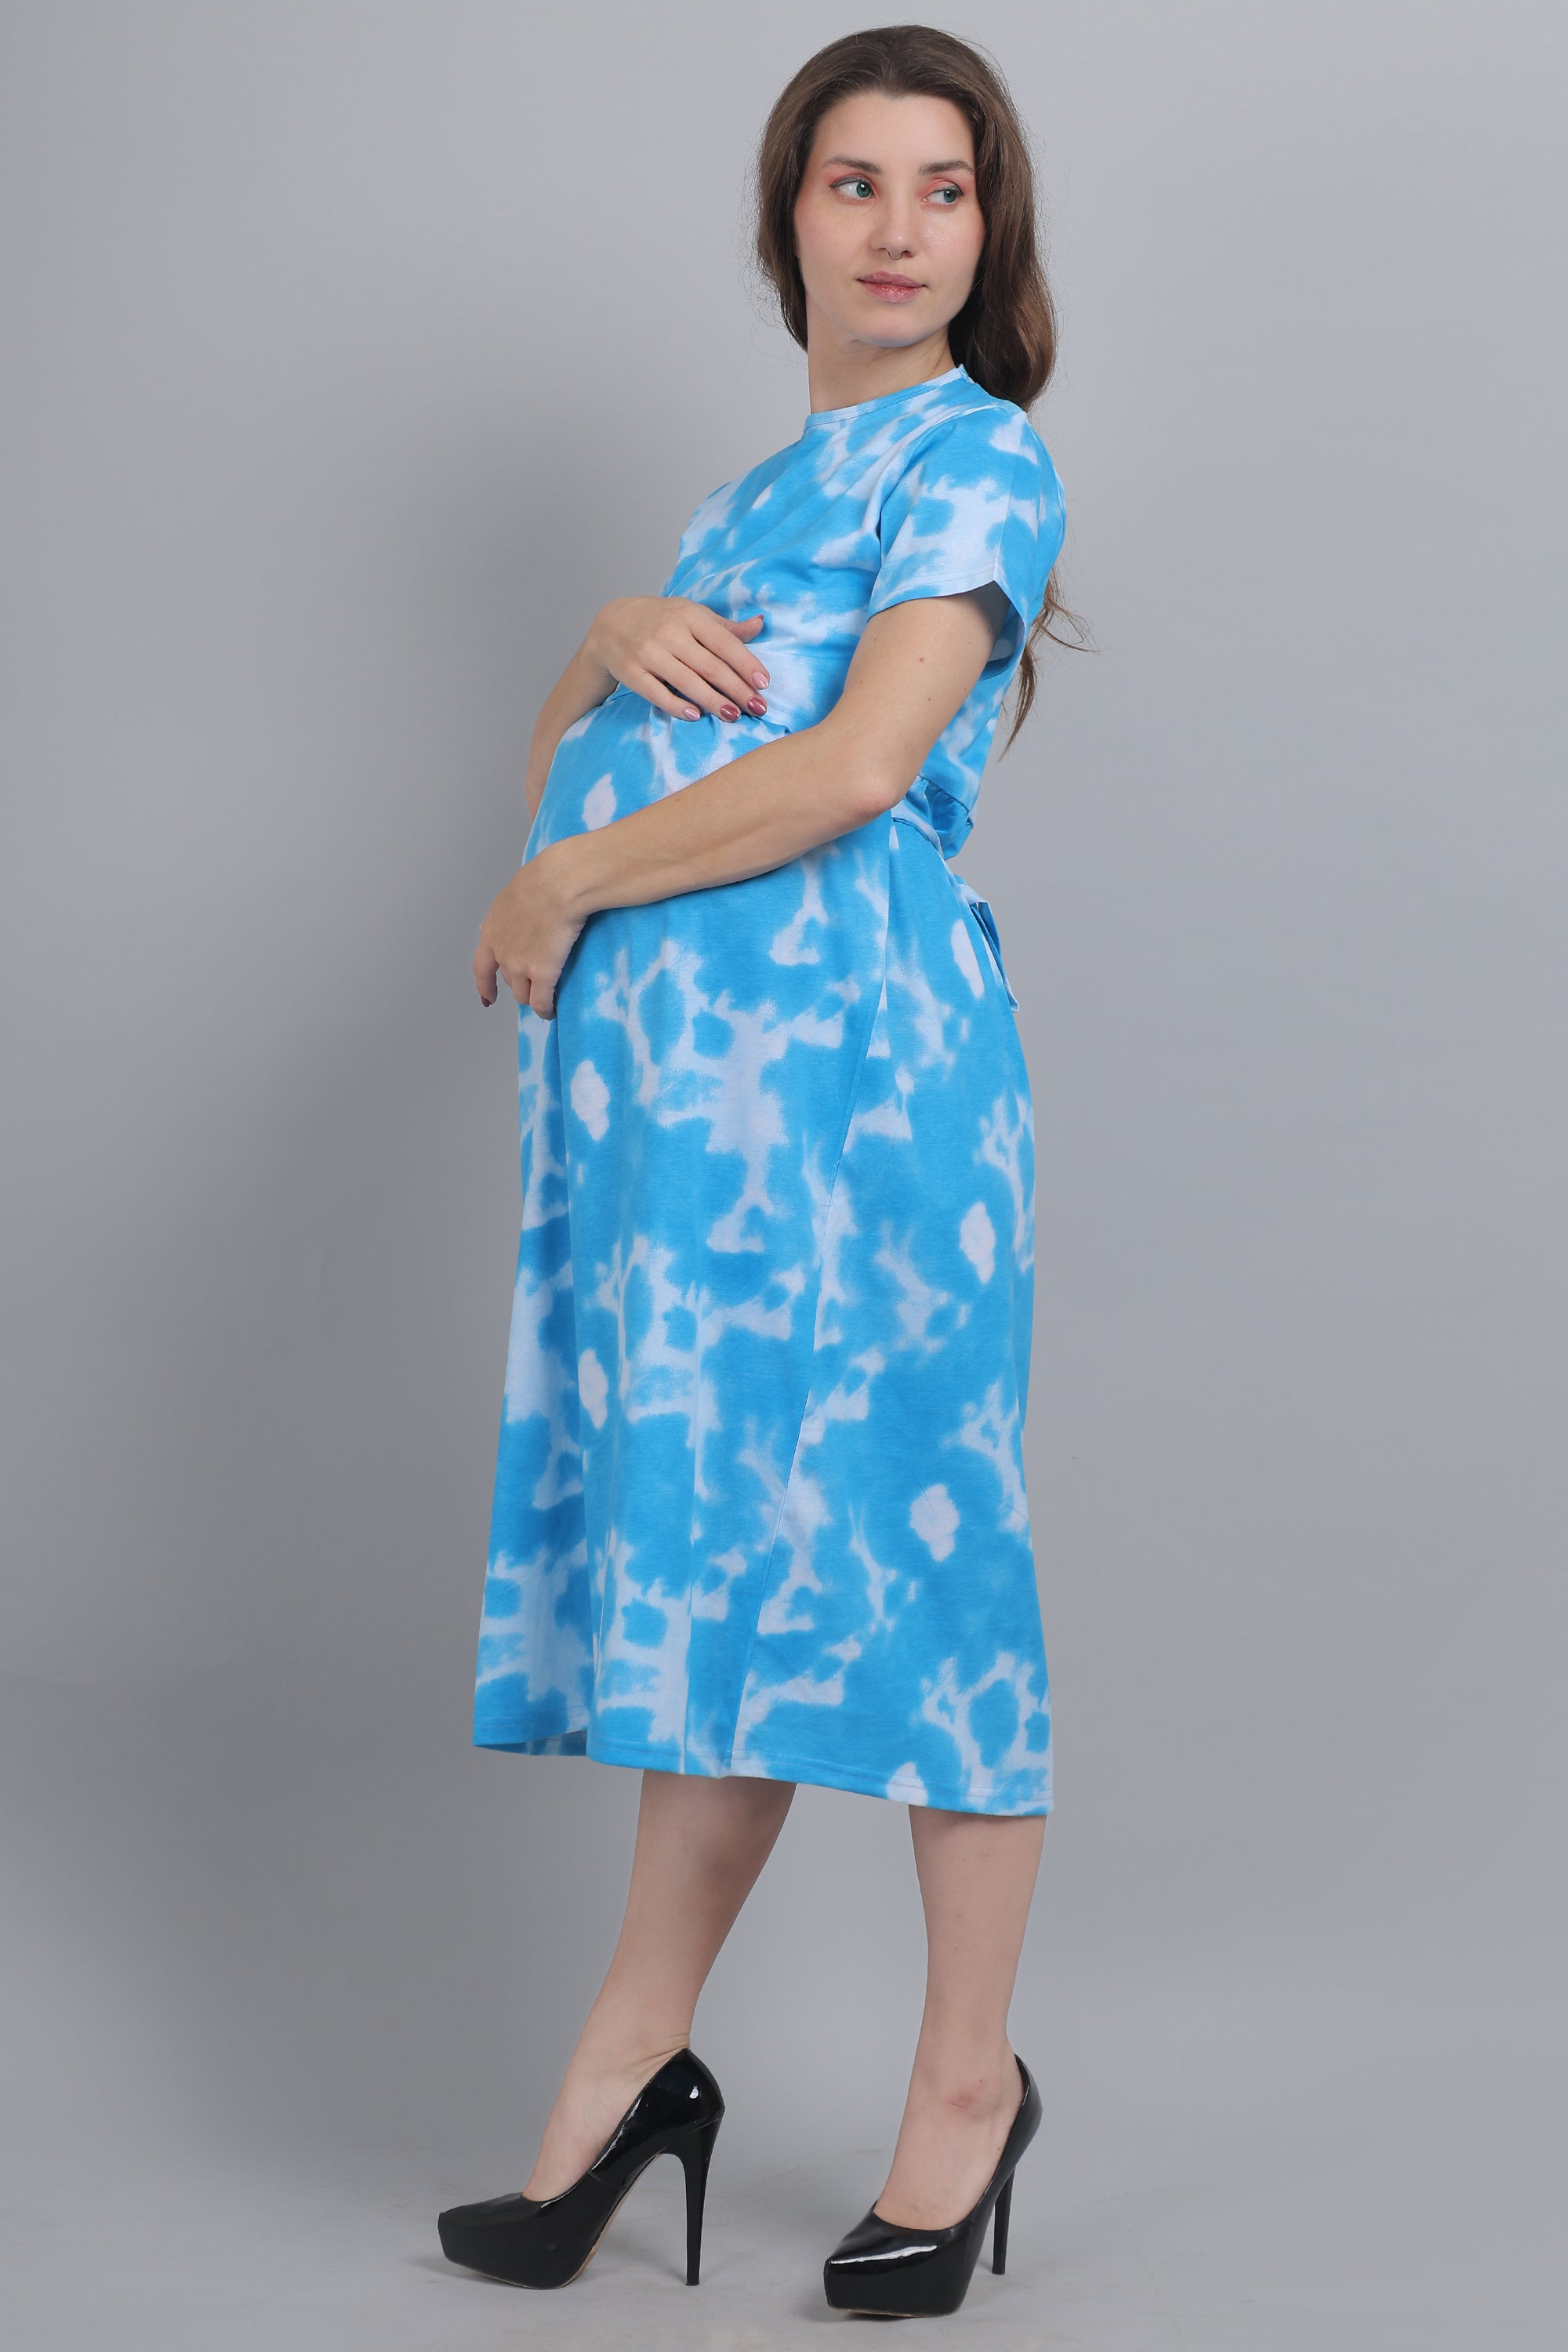 Blue Tie Dye Knitted Cotton Maternity Loungewear Dress